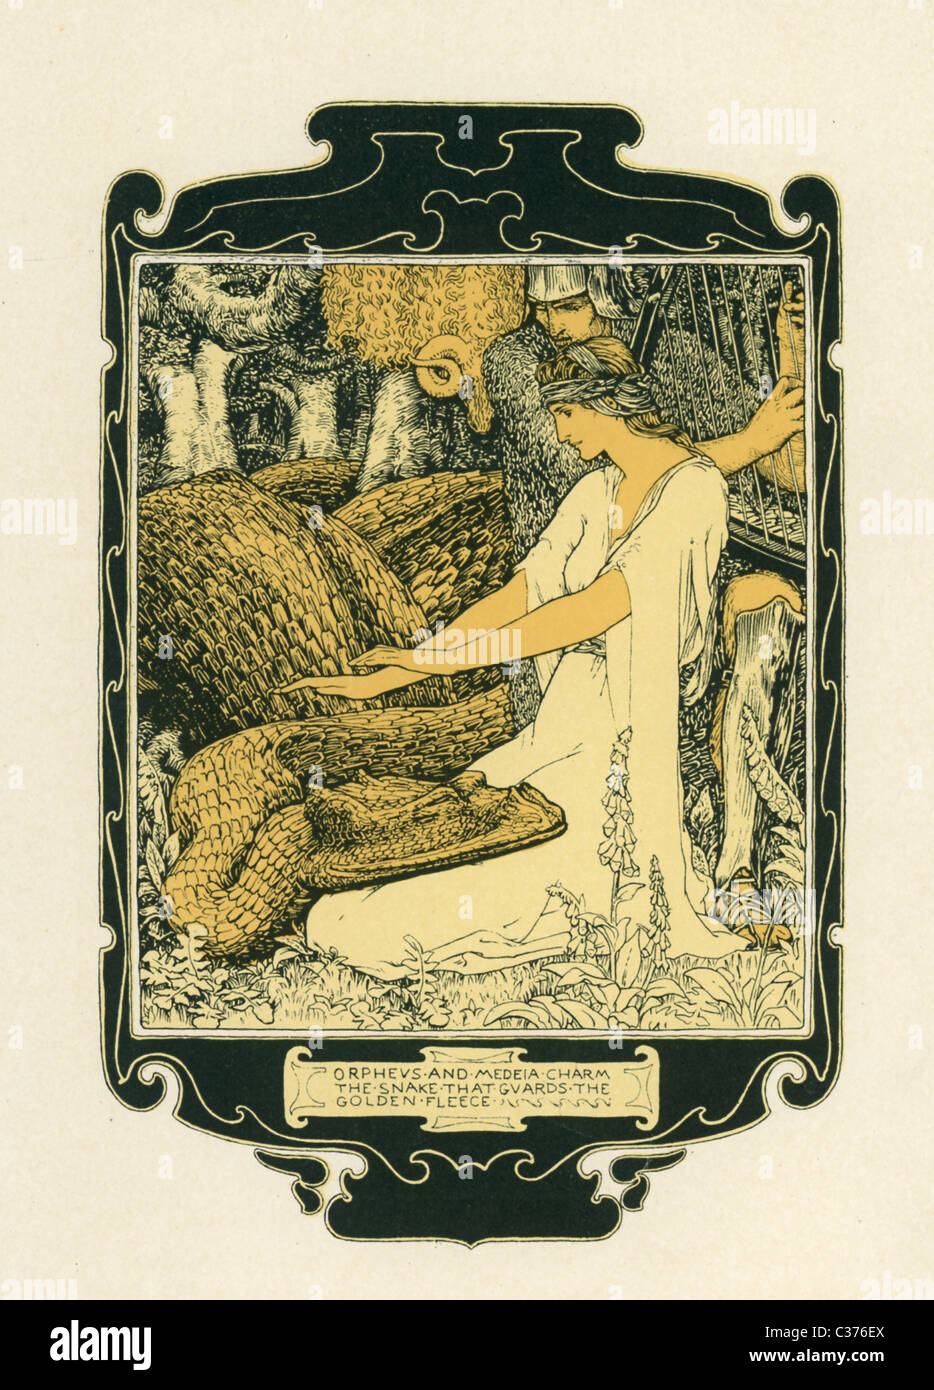 Medea, la figlia del re Aeetes e Orpheus svolge la sua lira come due fascino il drago che custodisce il Vello d'oro. Foto Stock